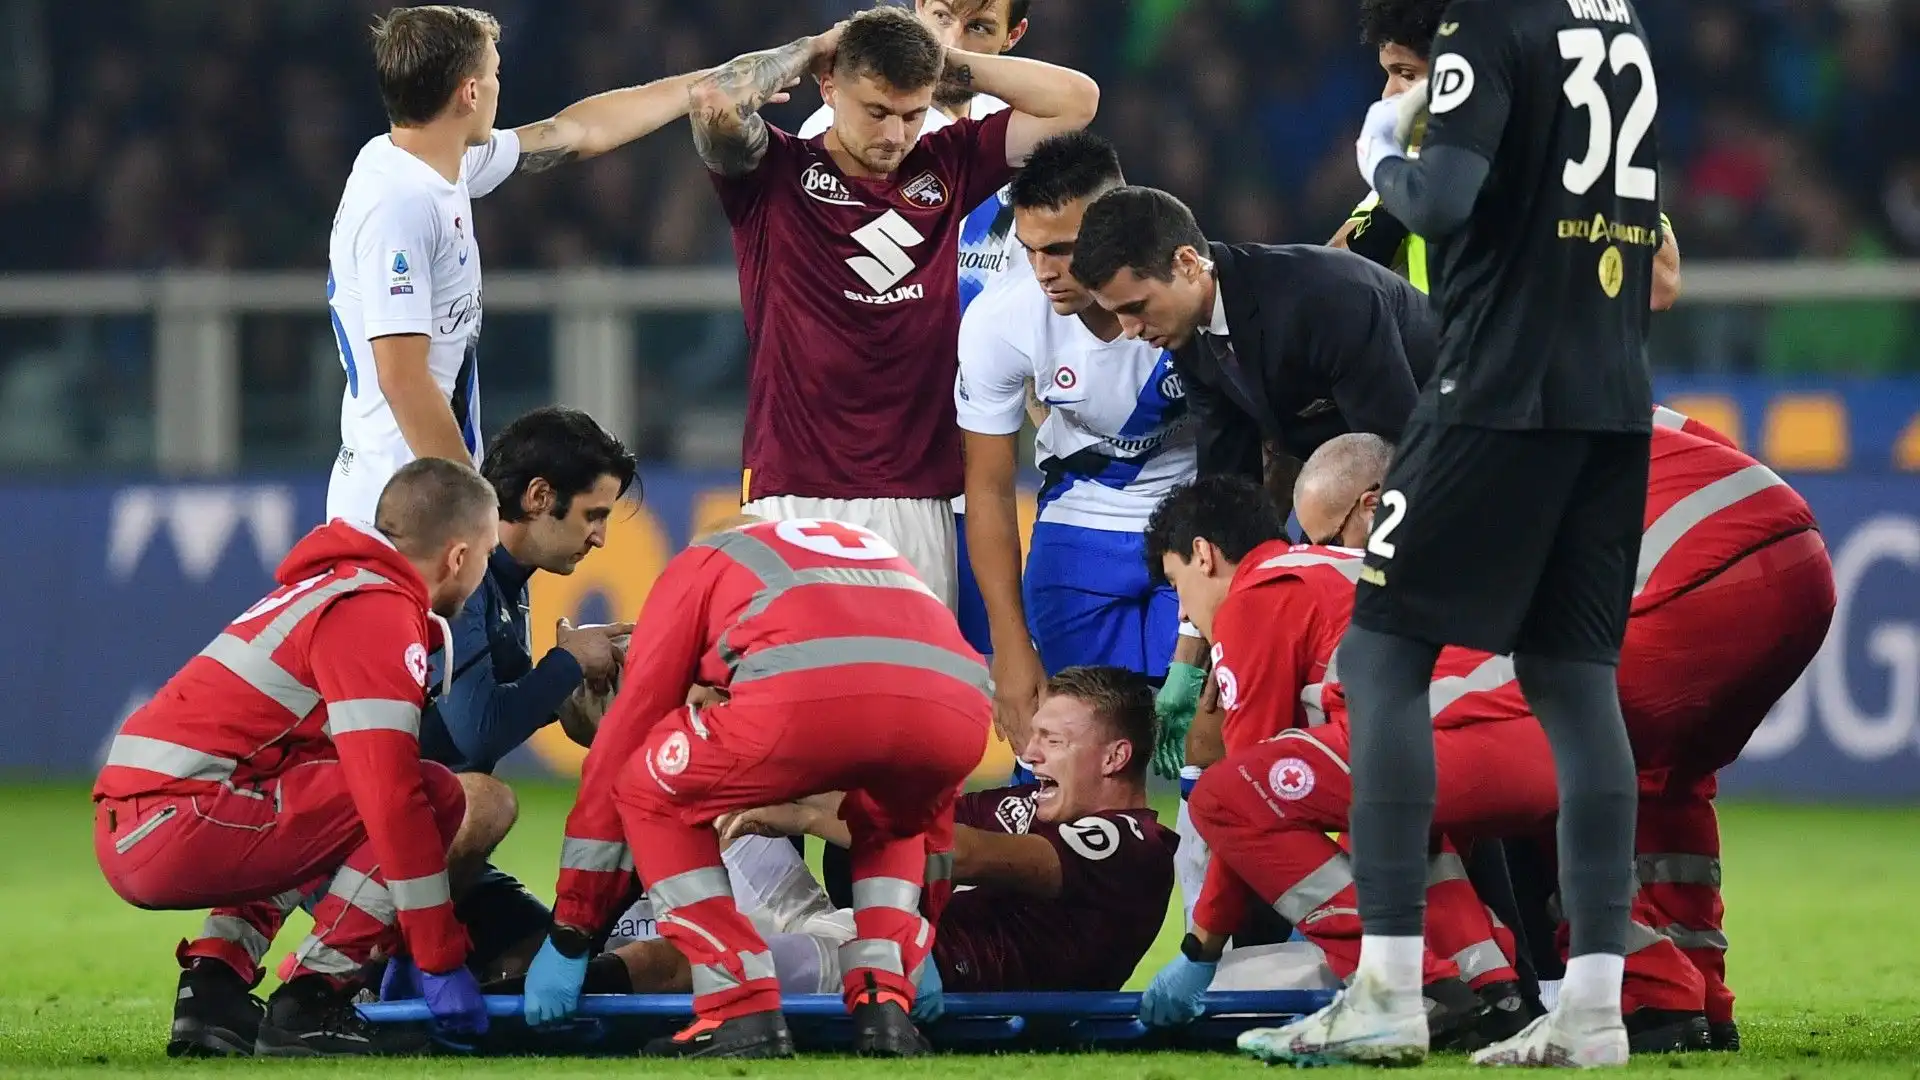 Questa la nota del Torino: "Gli esami strumentali eseguiti su Perr Schuurs hanno evidenziato la lesione del legamento crociato anteriore del ginocchio sinistro